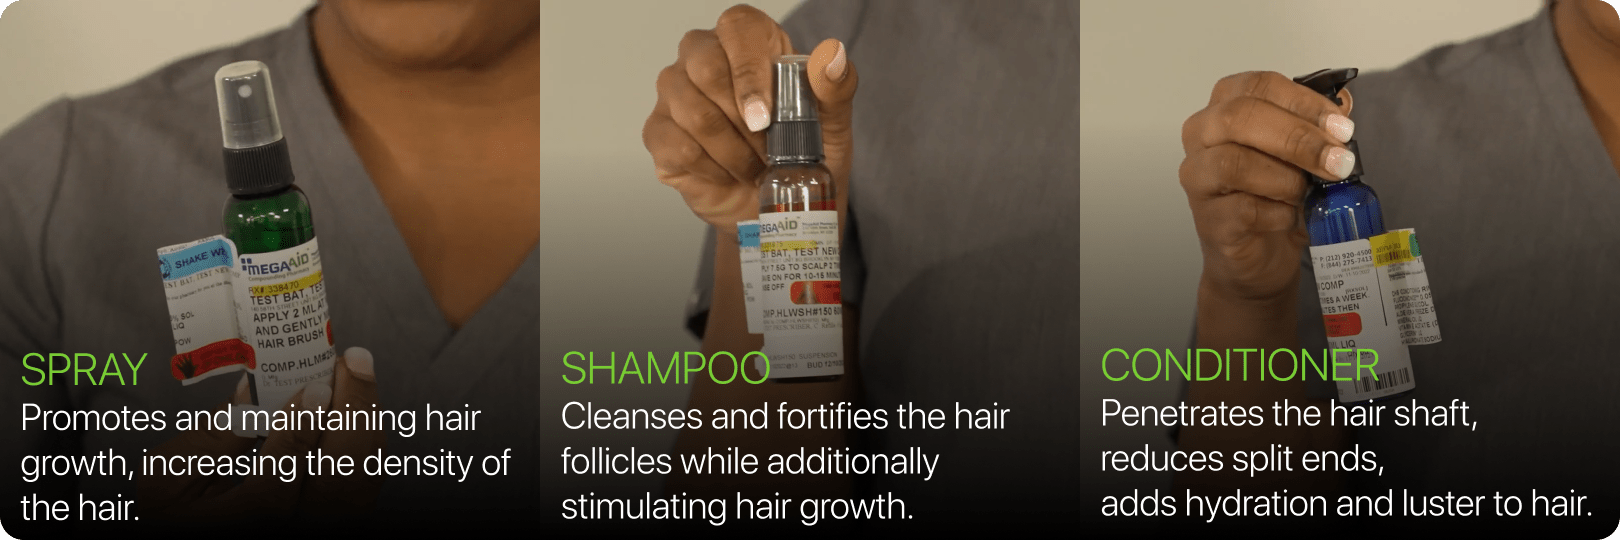 Mega aid hair loss treatment description